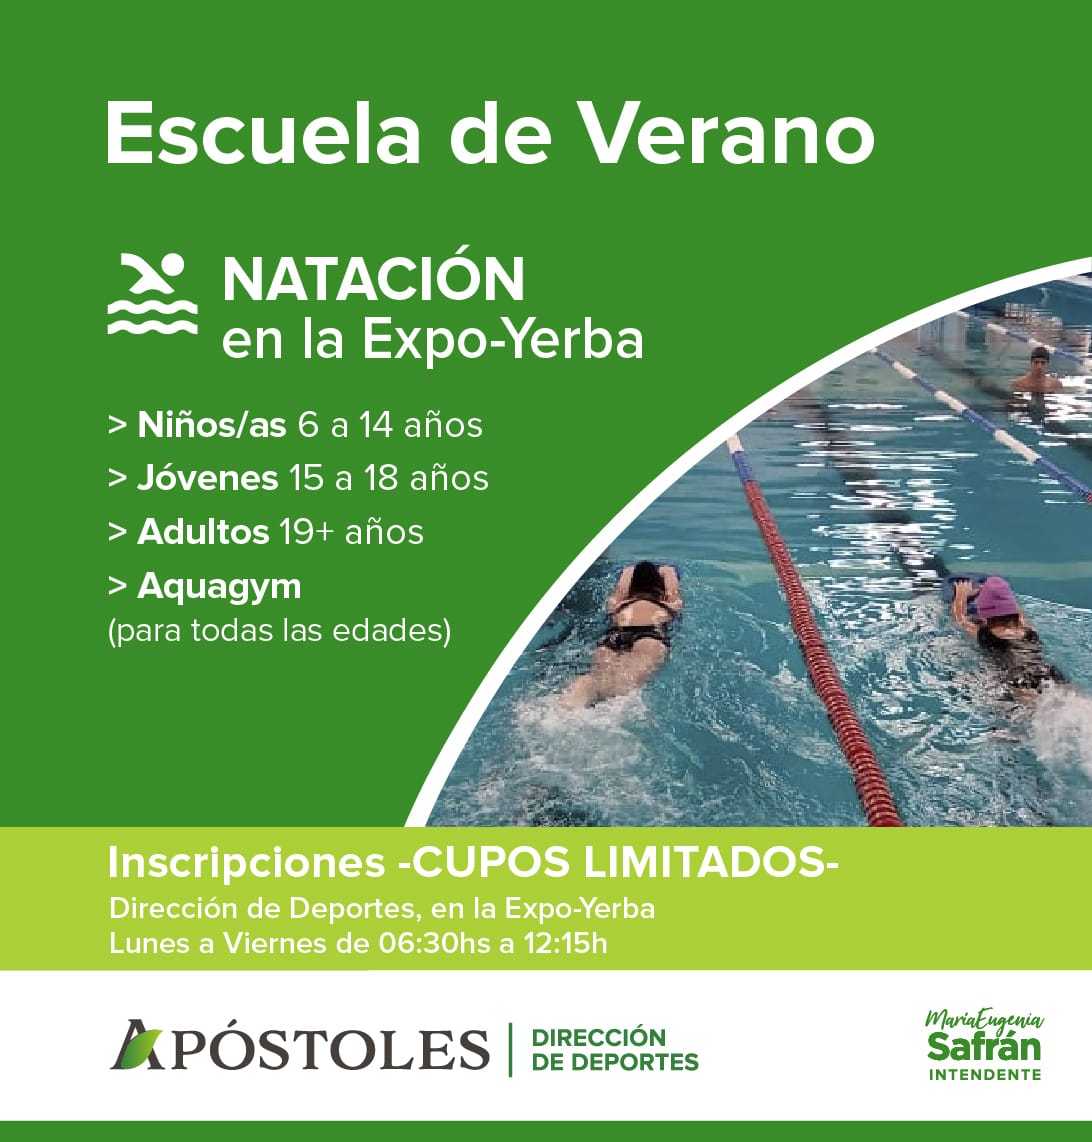 Escuelas de Verano: Inscripciones abiertas para participar de las clases de natación brindadas por la Dirección de Deportes